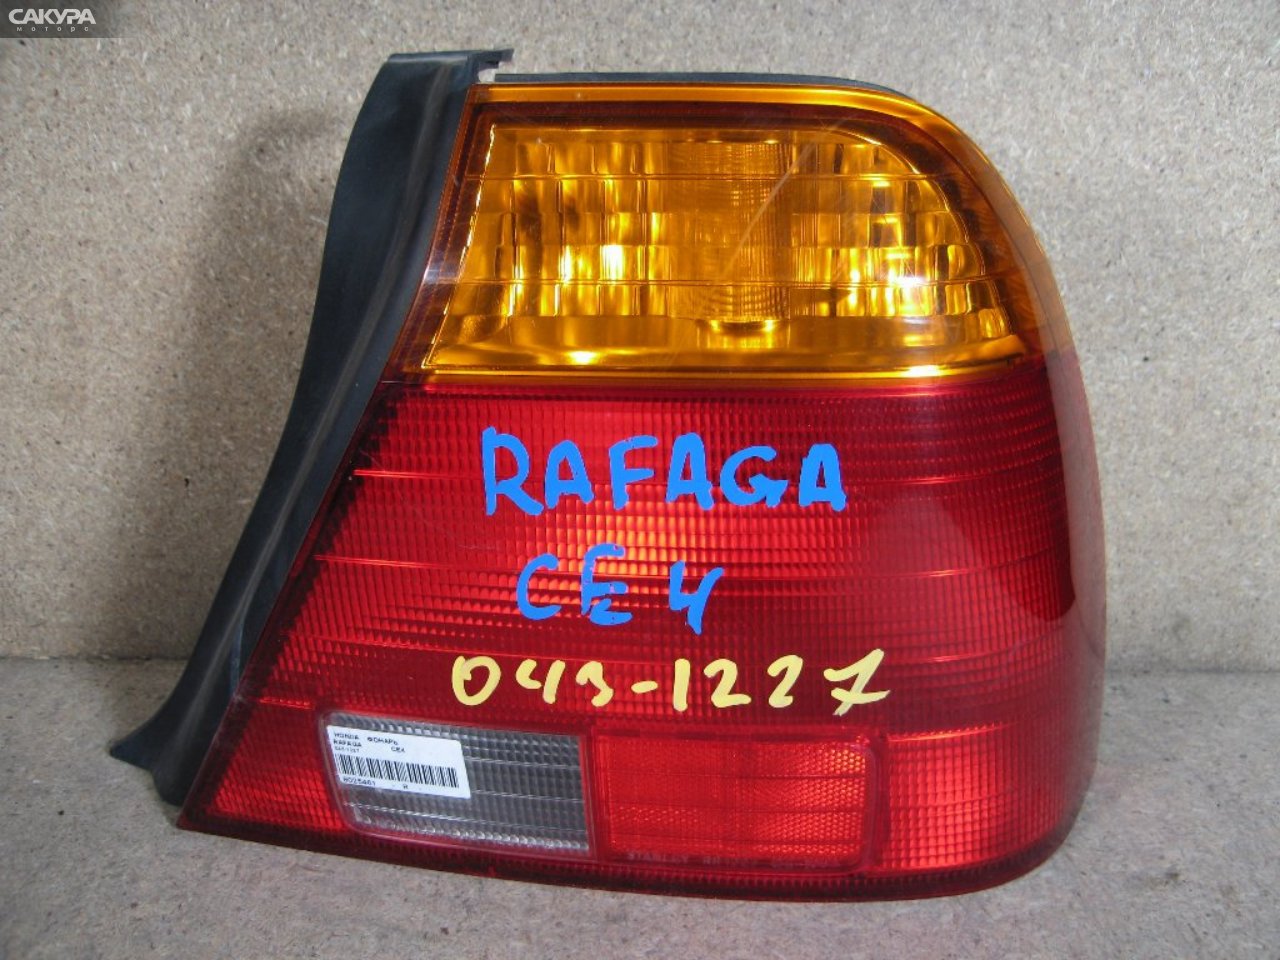 Фонарь стоп-сигнала правый Honda Rafaga CE4 043-1227: купить в Сакура Абакан.